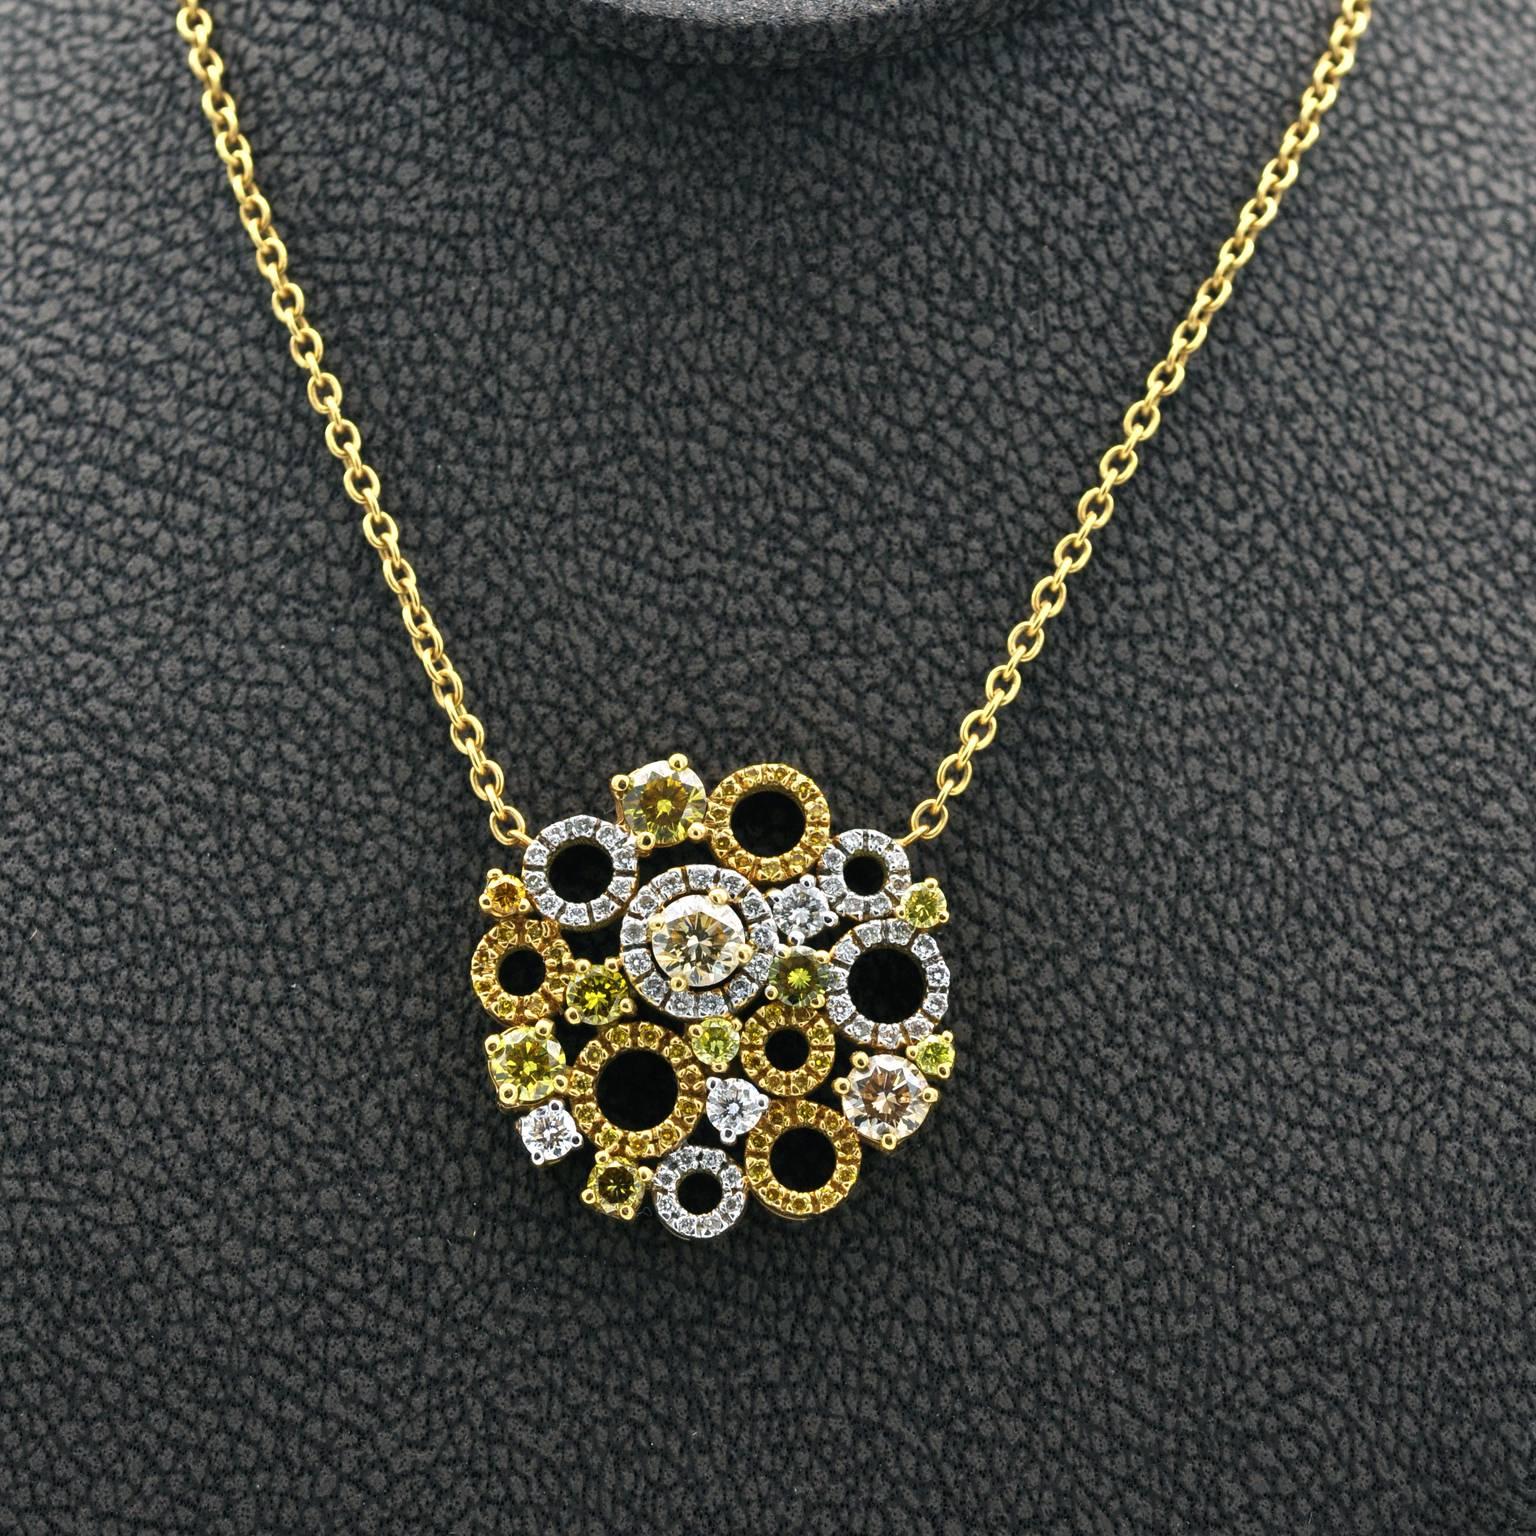 Attraktive, trendige Halskette mit kreisförmigen und runden Diamanten, die in einem eleganten, runden Strauß angeordnet sind.  
Gelbe Diamanten: 1,33 Karat
weiße Diamanten: 0,41 Karat
